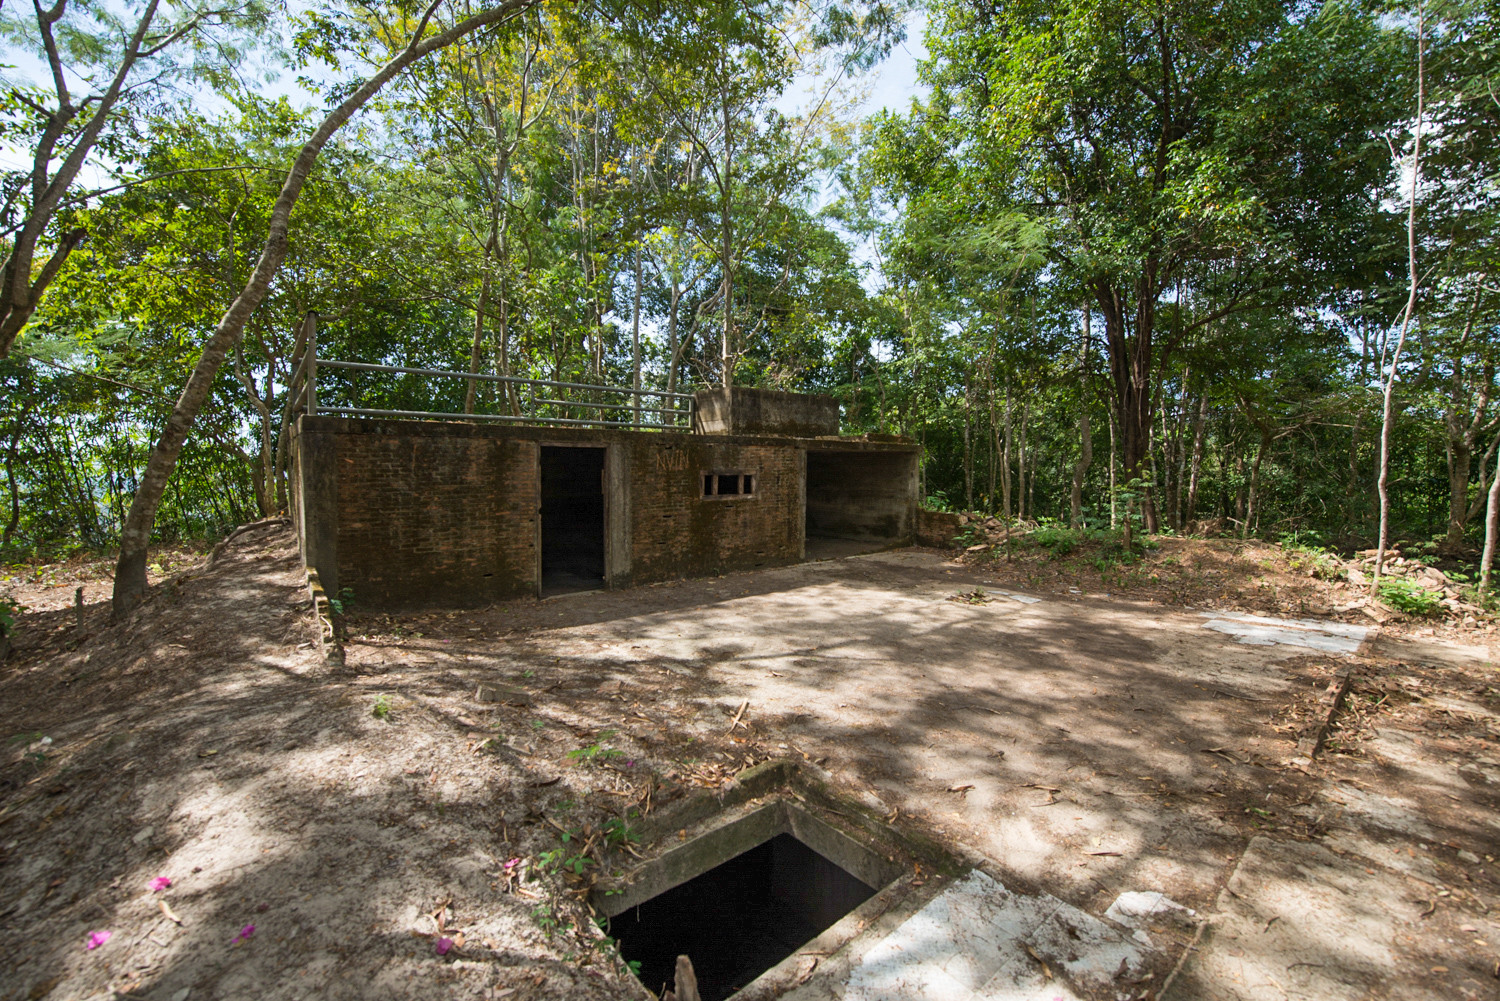 Cambodja fotoreizen huis Pol Pot